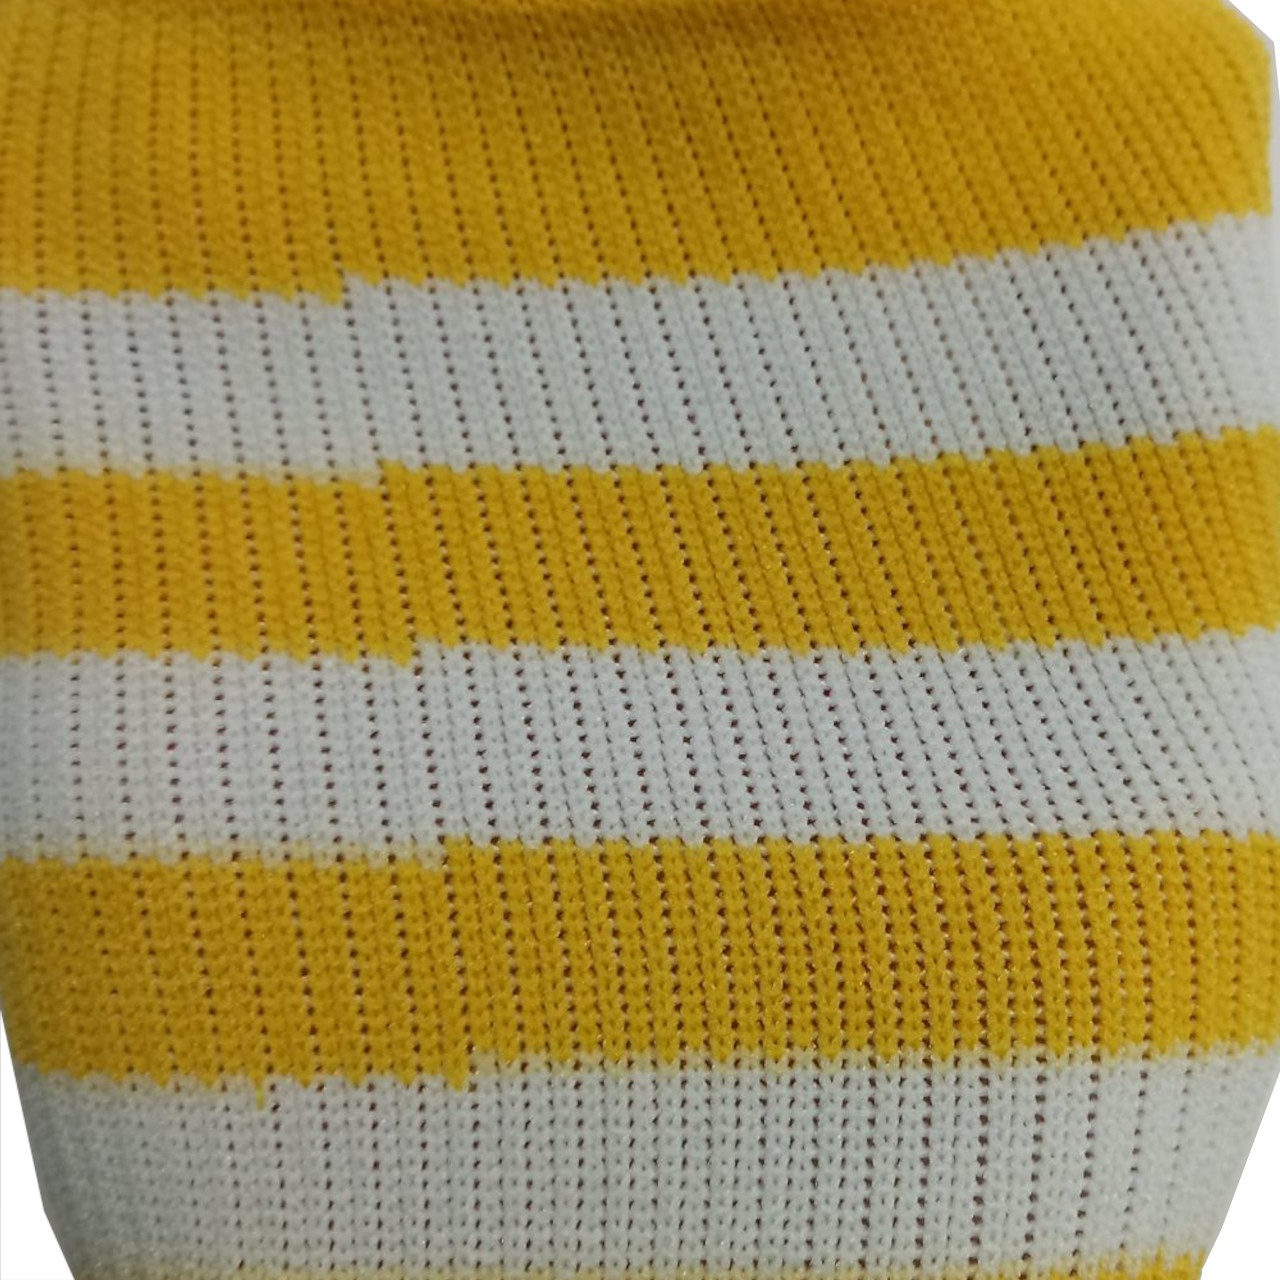 Гетри футбольні для дорослих жовті зі смужками В-150